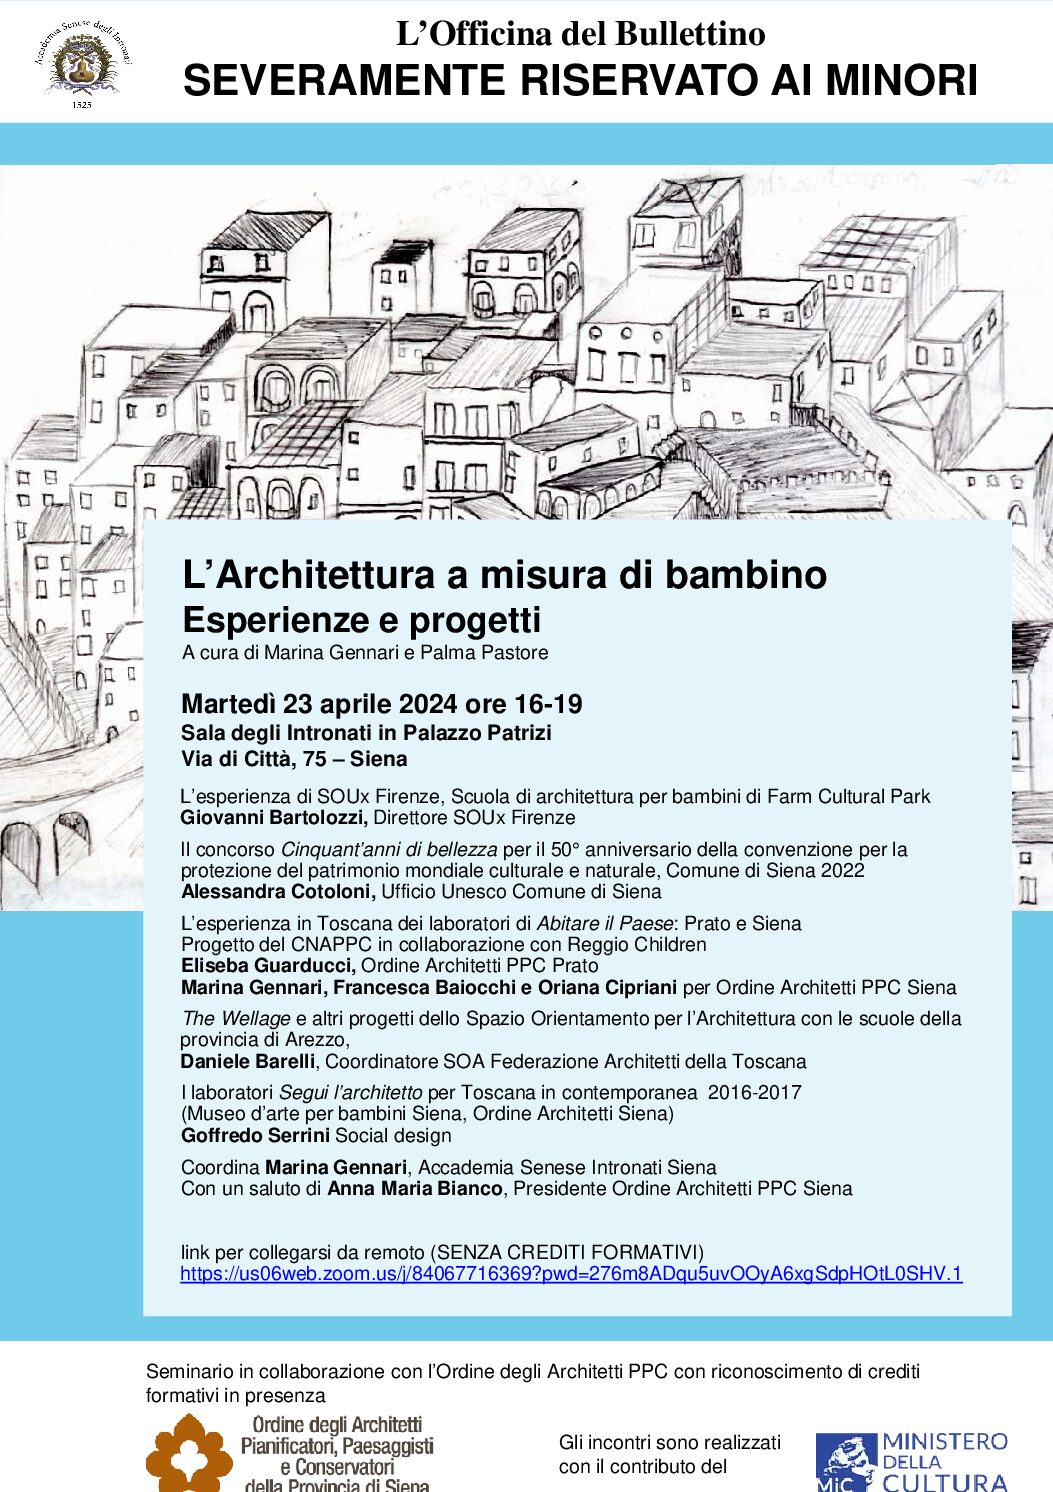 23 APRILE 2024 ORE 16.00 SEMINARIO: L’ARCHITETTURA A MISURA DI BAMBINO, ESPERIENZE E PROGETTI